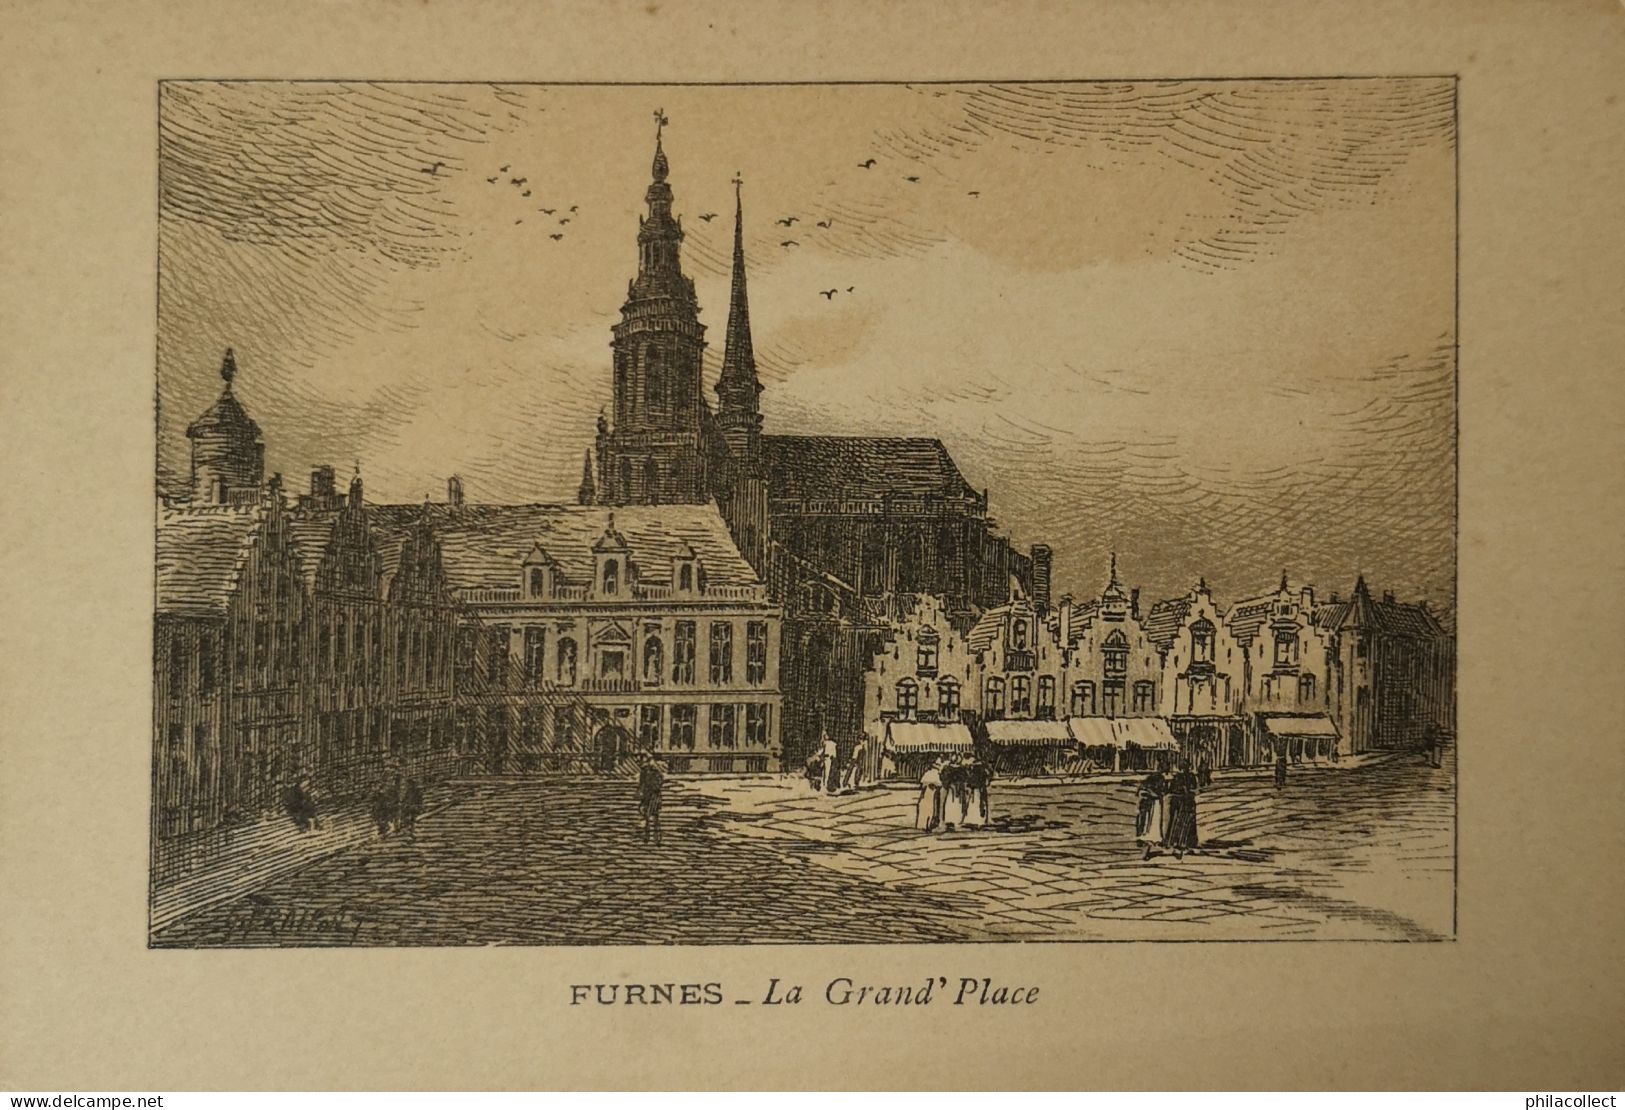 Veurne - Furnes // Le Grand Place - Promo Carte Chemin De Fer Du Nord (Paris A Bruxelles) Traject En 3h.57 19?? - Veurne